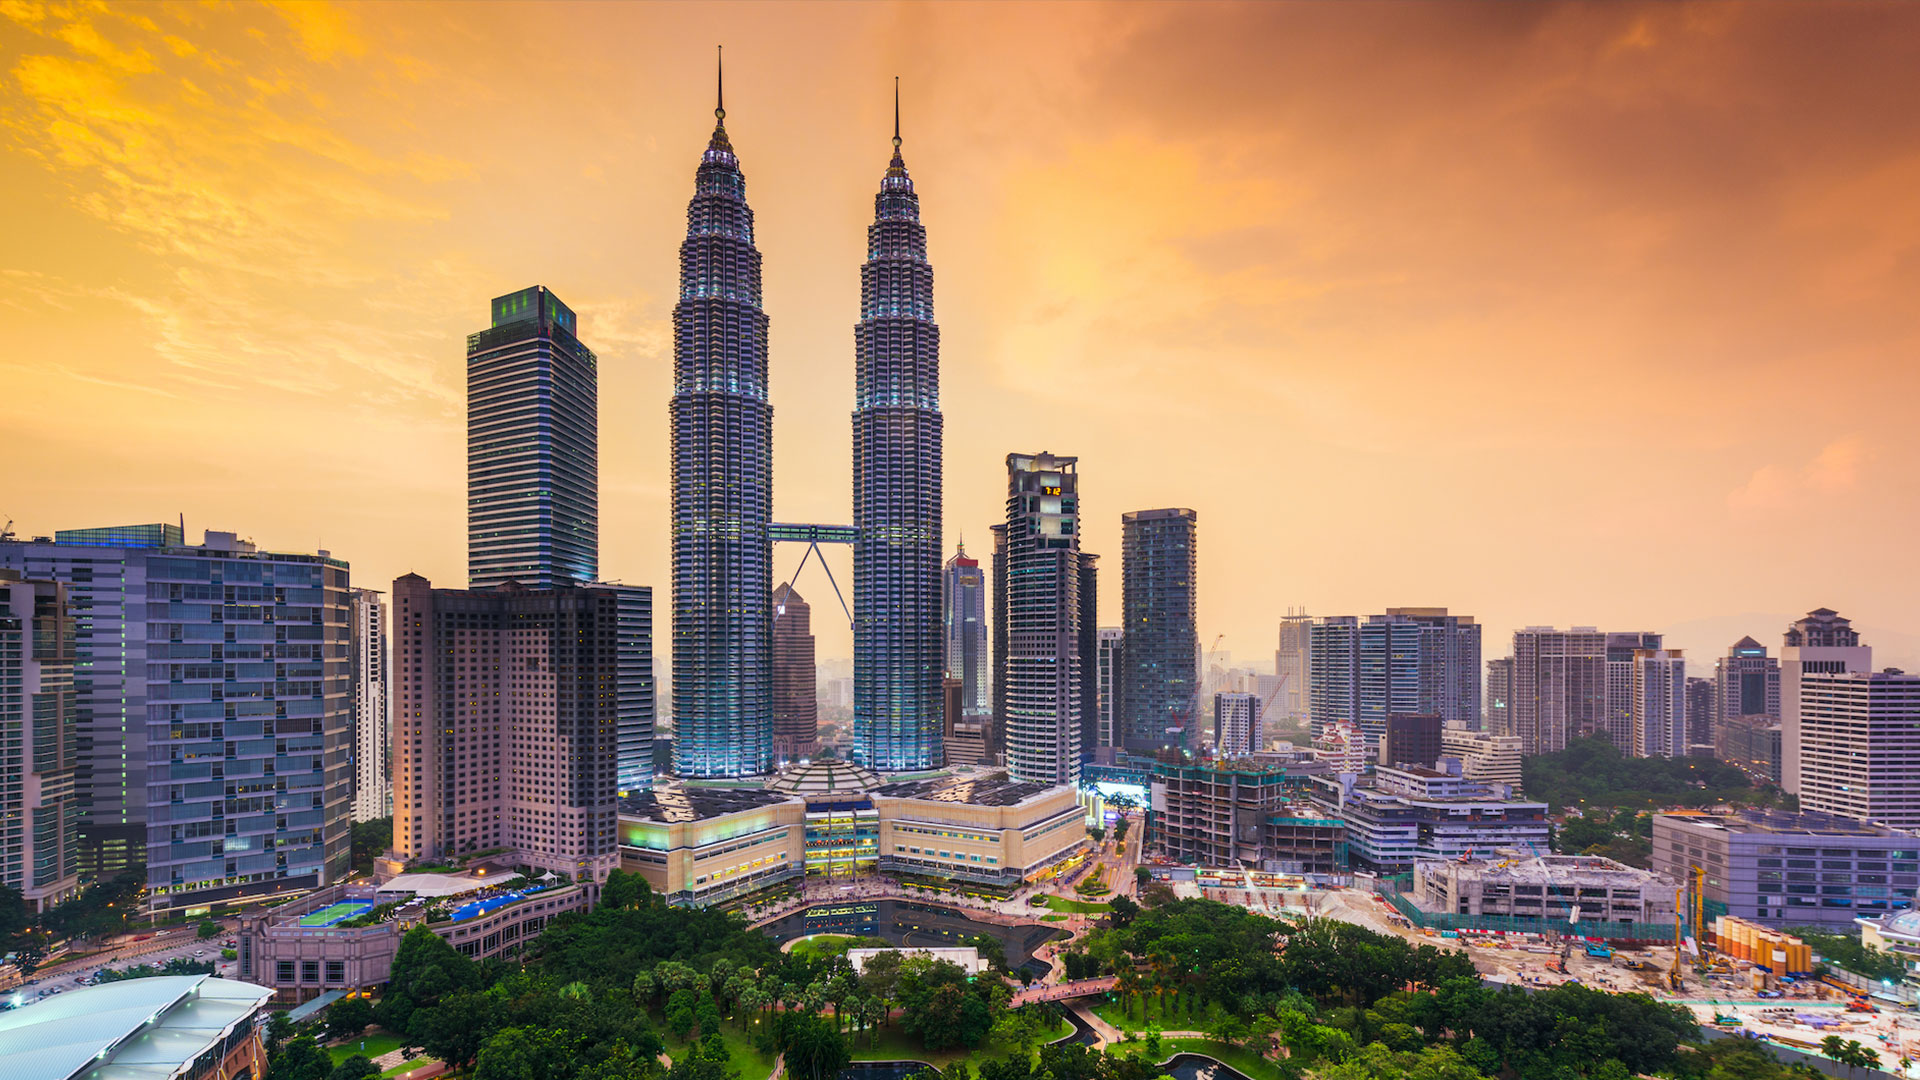 Skyline view of the Petronas Twin Towers in Kuala Lumpur, Malaysia